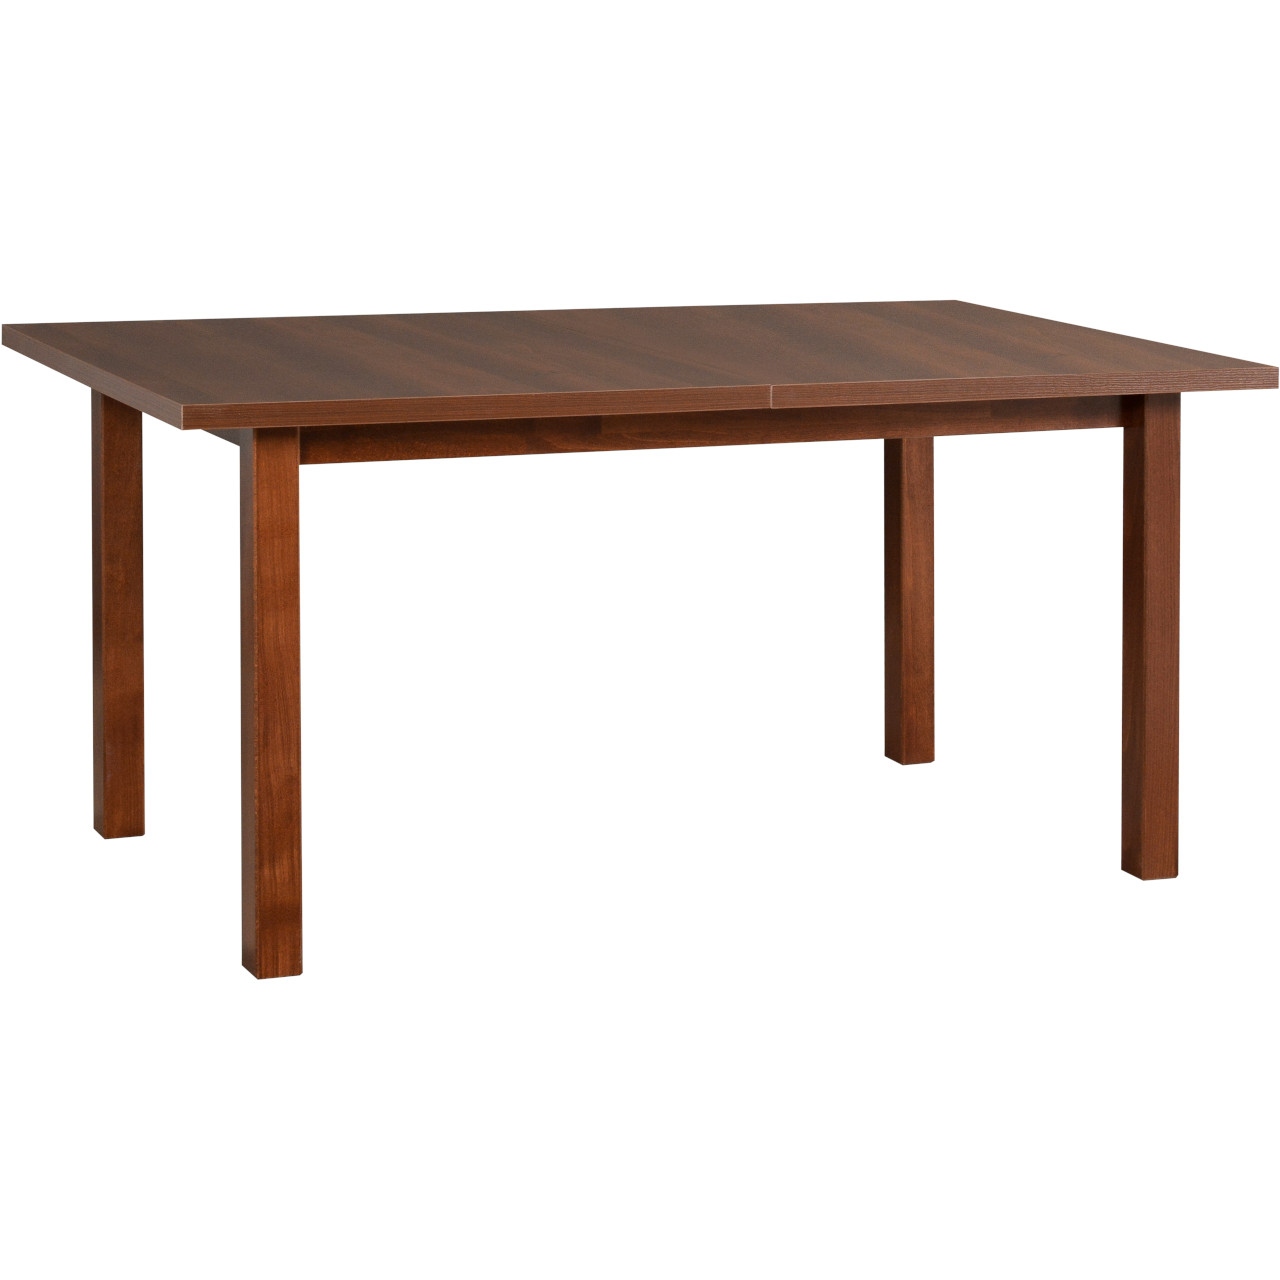 Table MODENA 2 92x160/200 walnut laminate